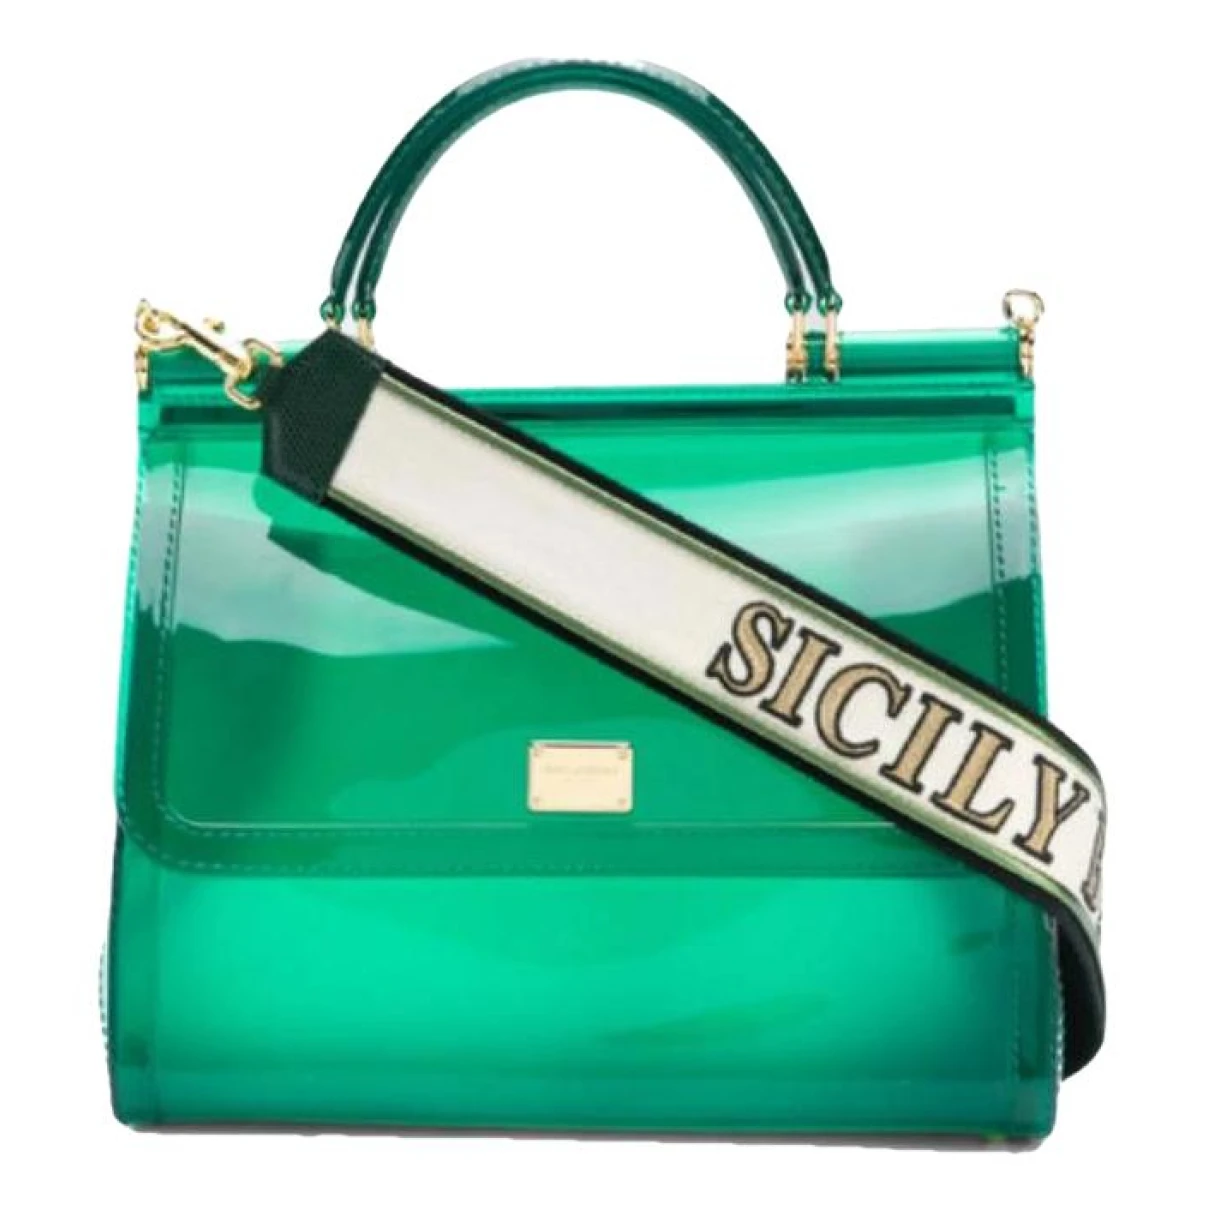 Pre-owned Dolce & Gabbana Sicily Handbag In Green